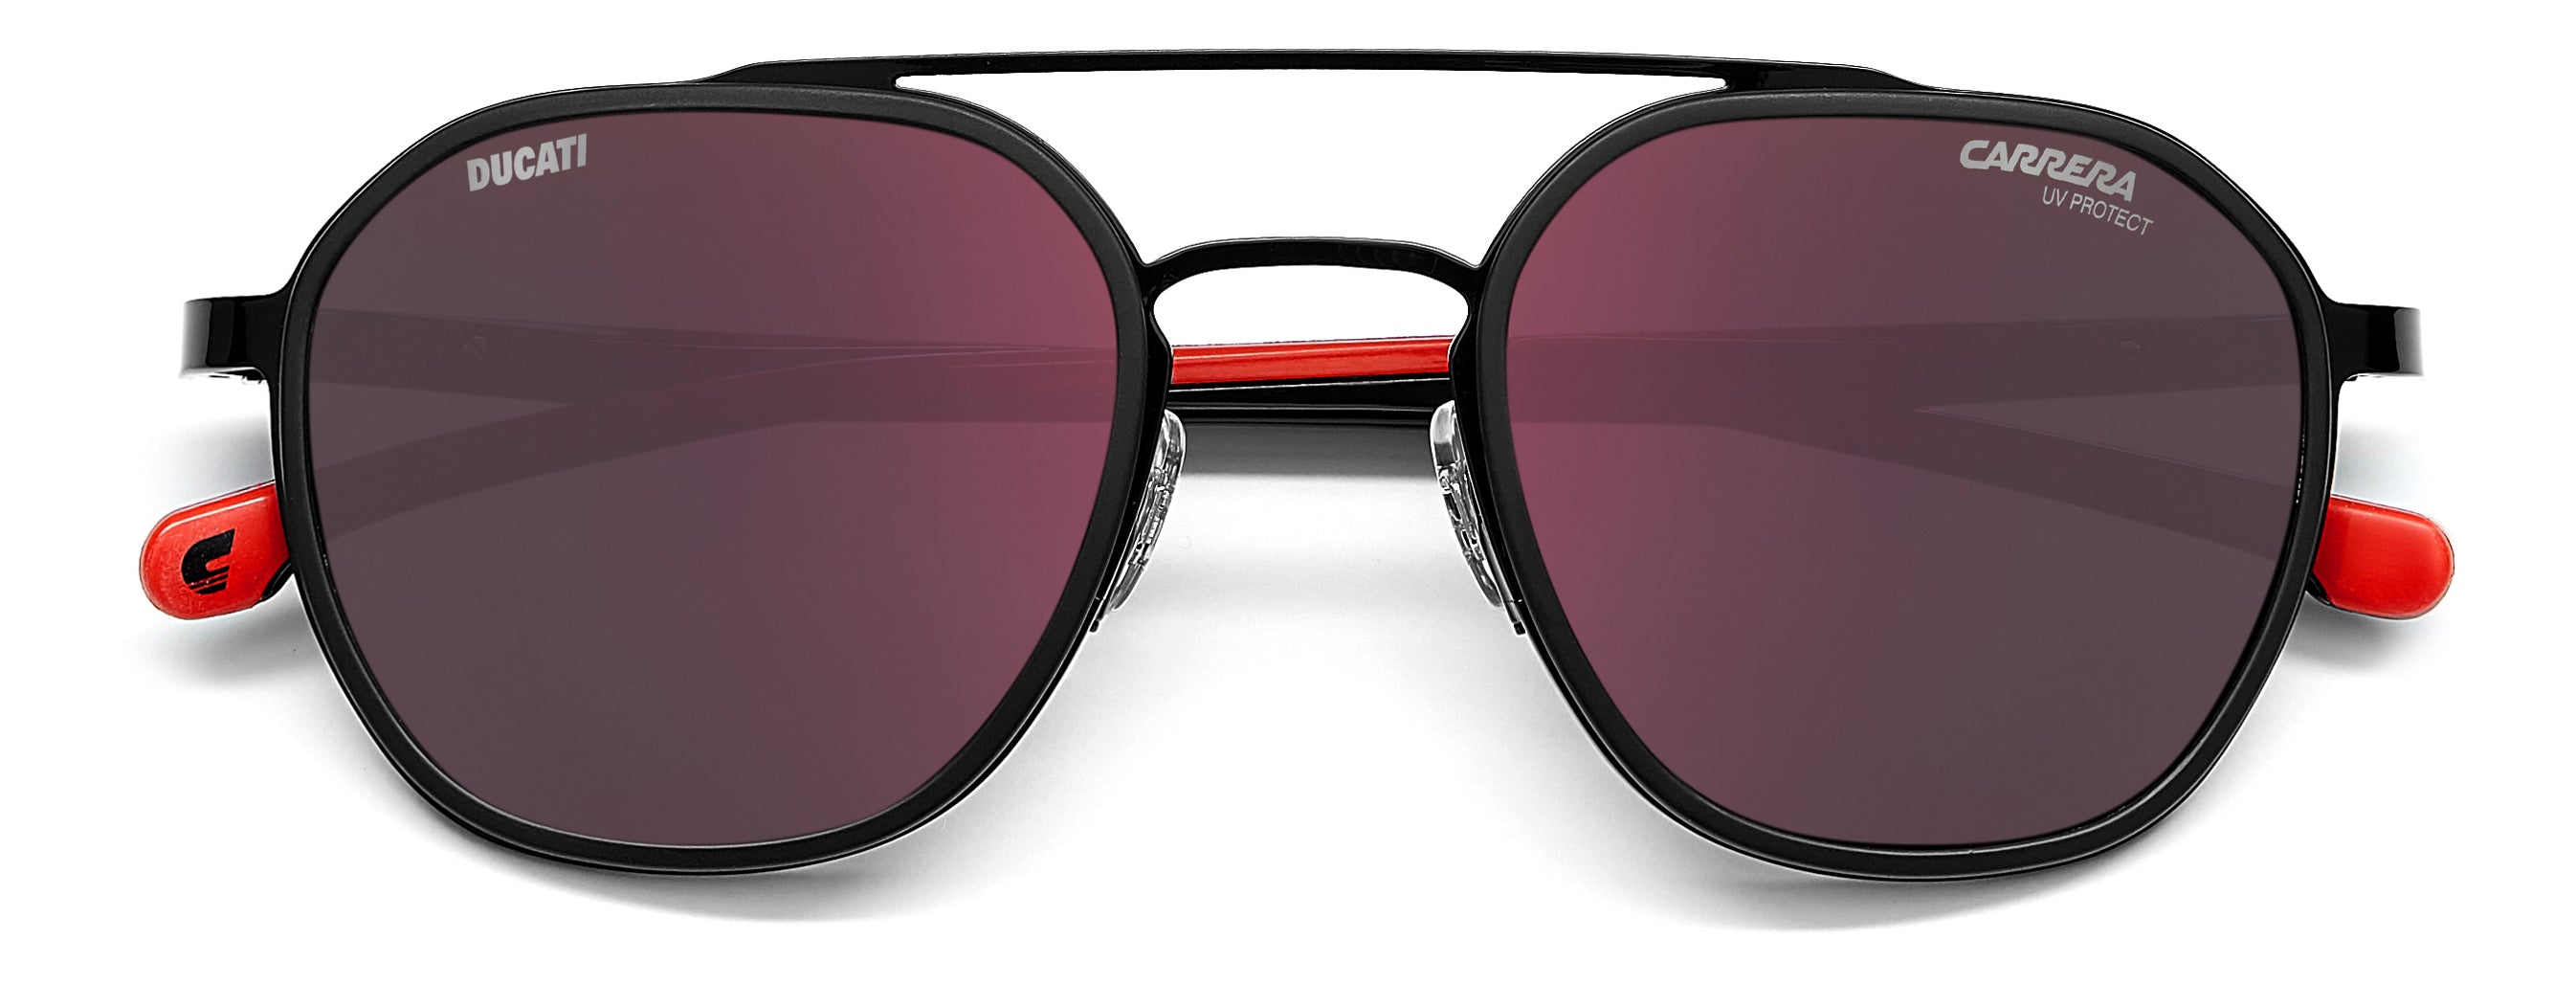 Carrera GRAND PRIX 3 - D51 08 Black Blue | Sunglasses Man